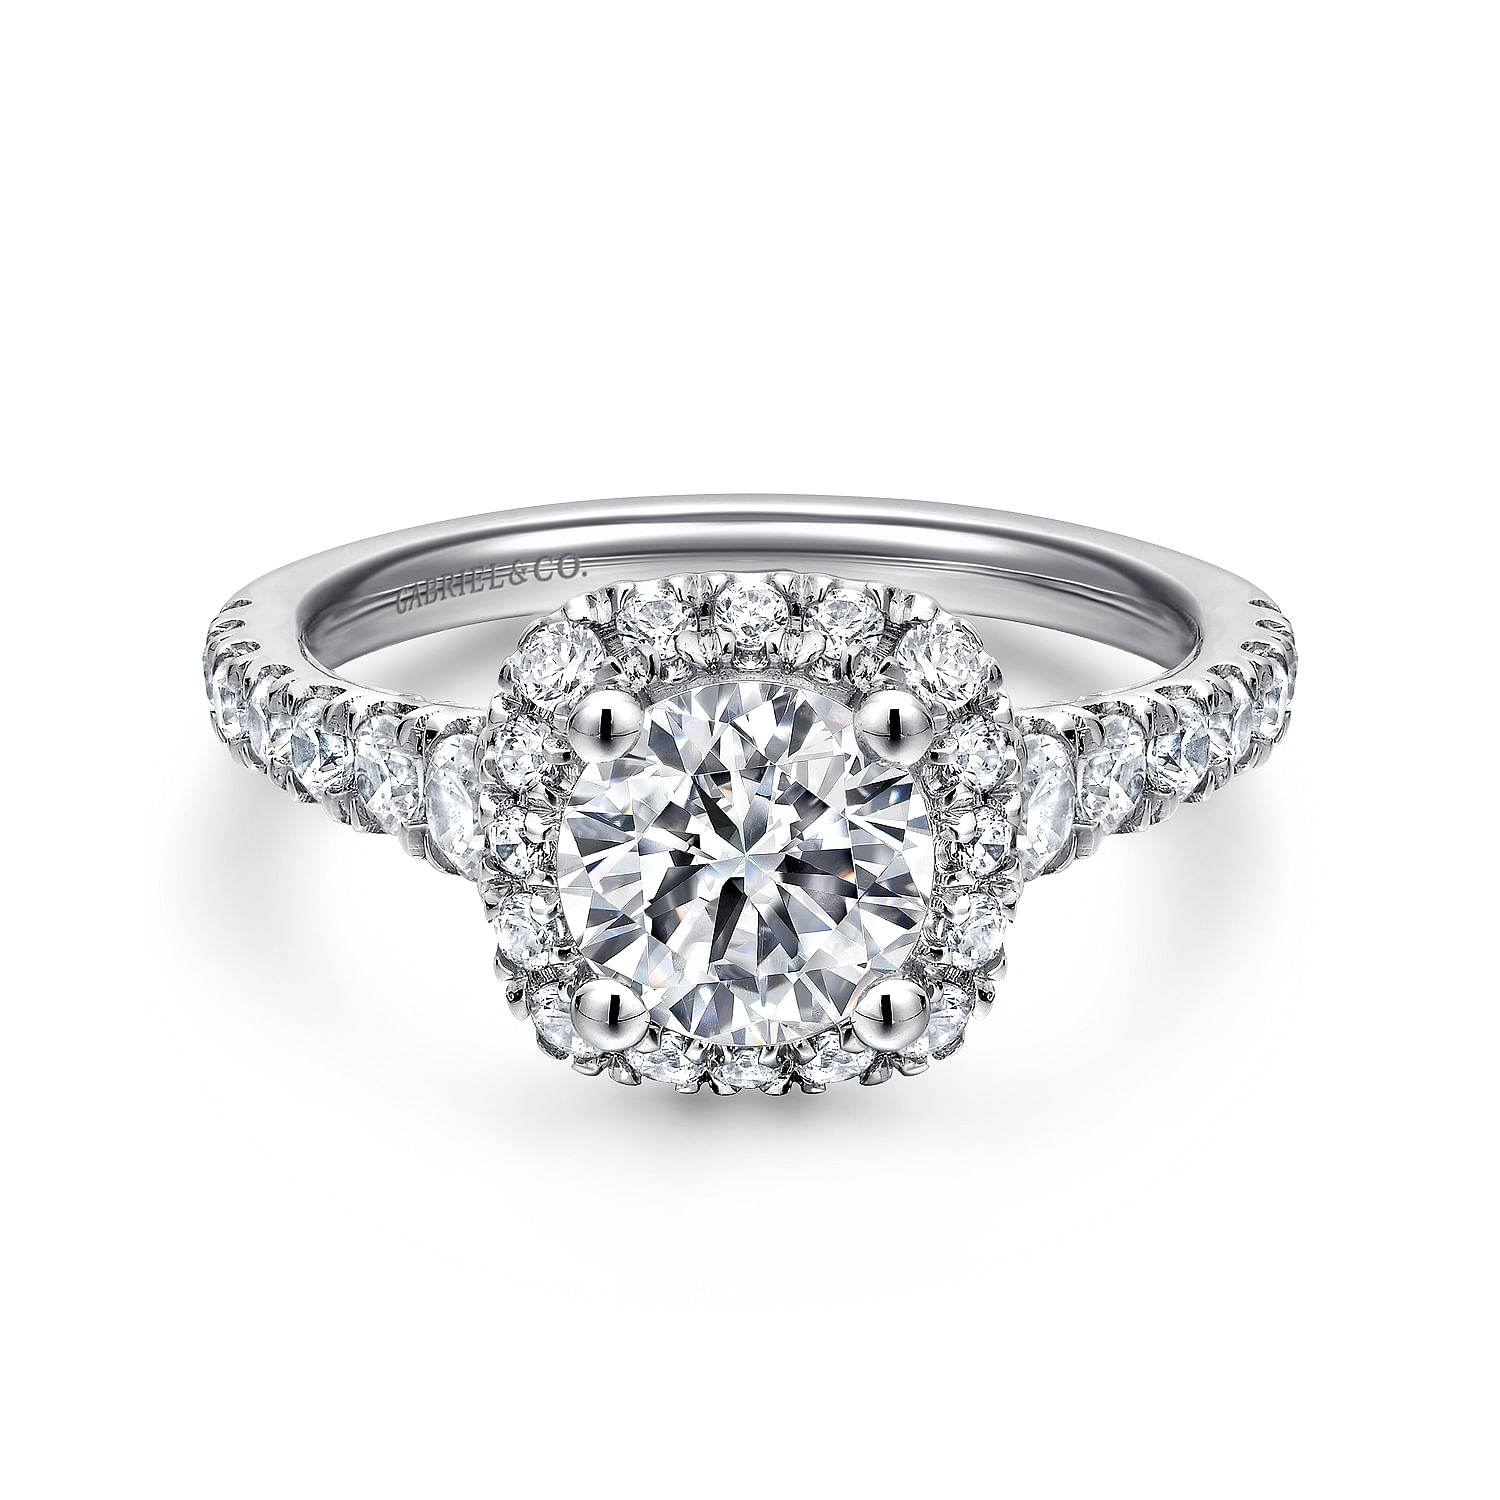 Hazel - 14K White Gold Cushion Halo Round Diamond Engagement Ring